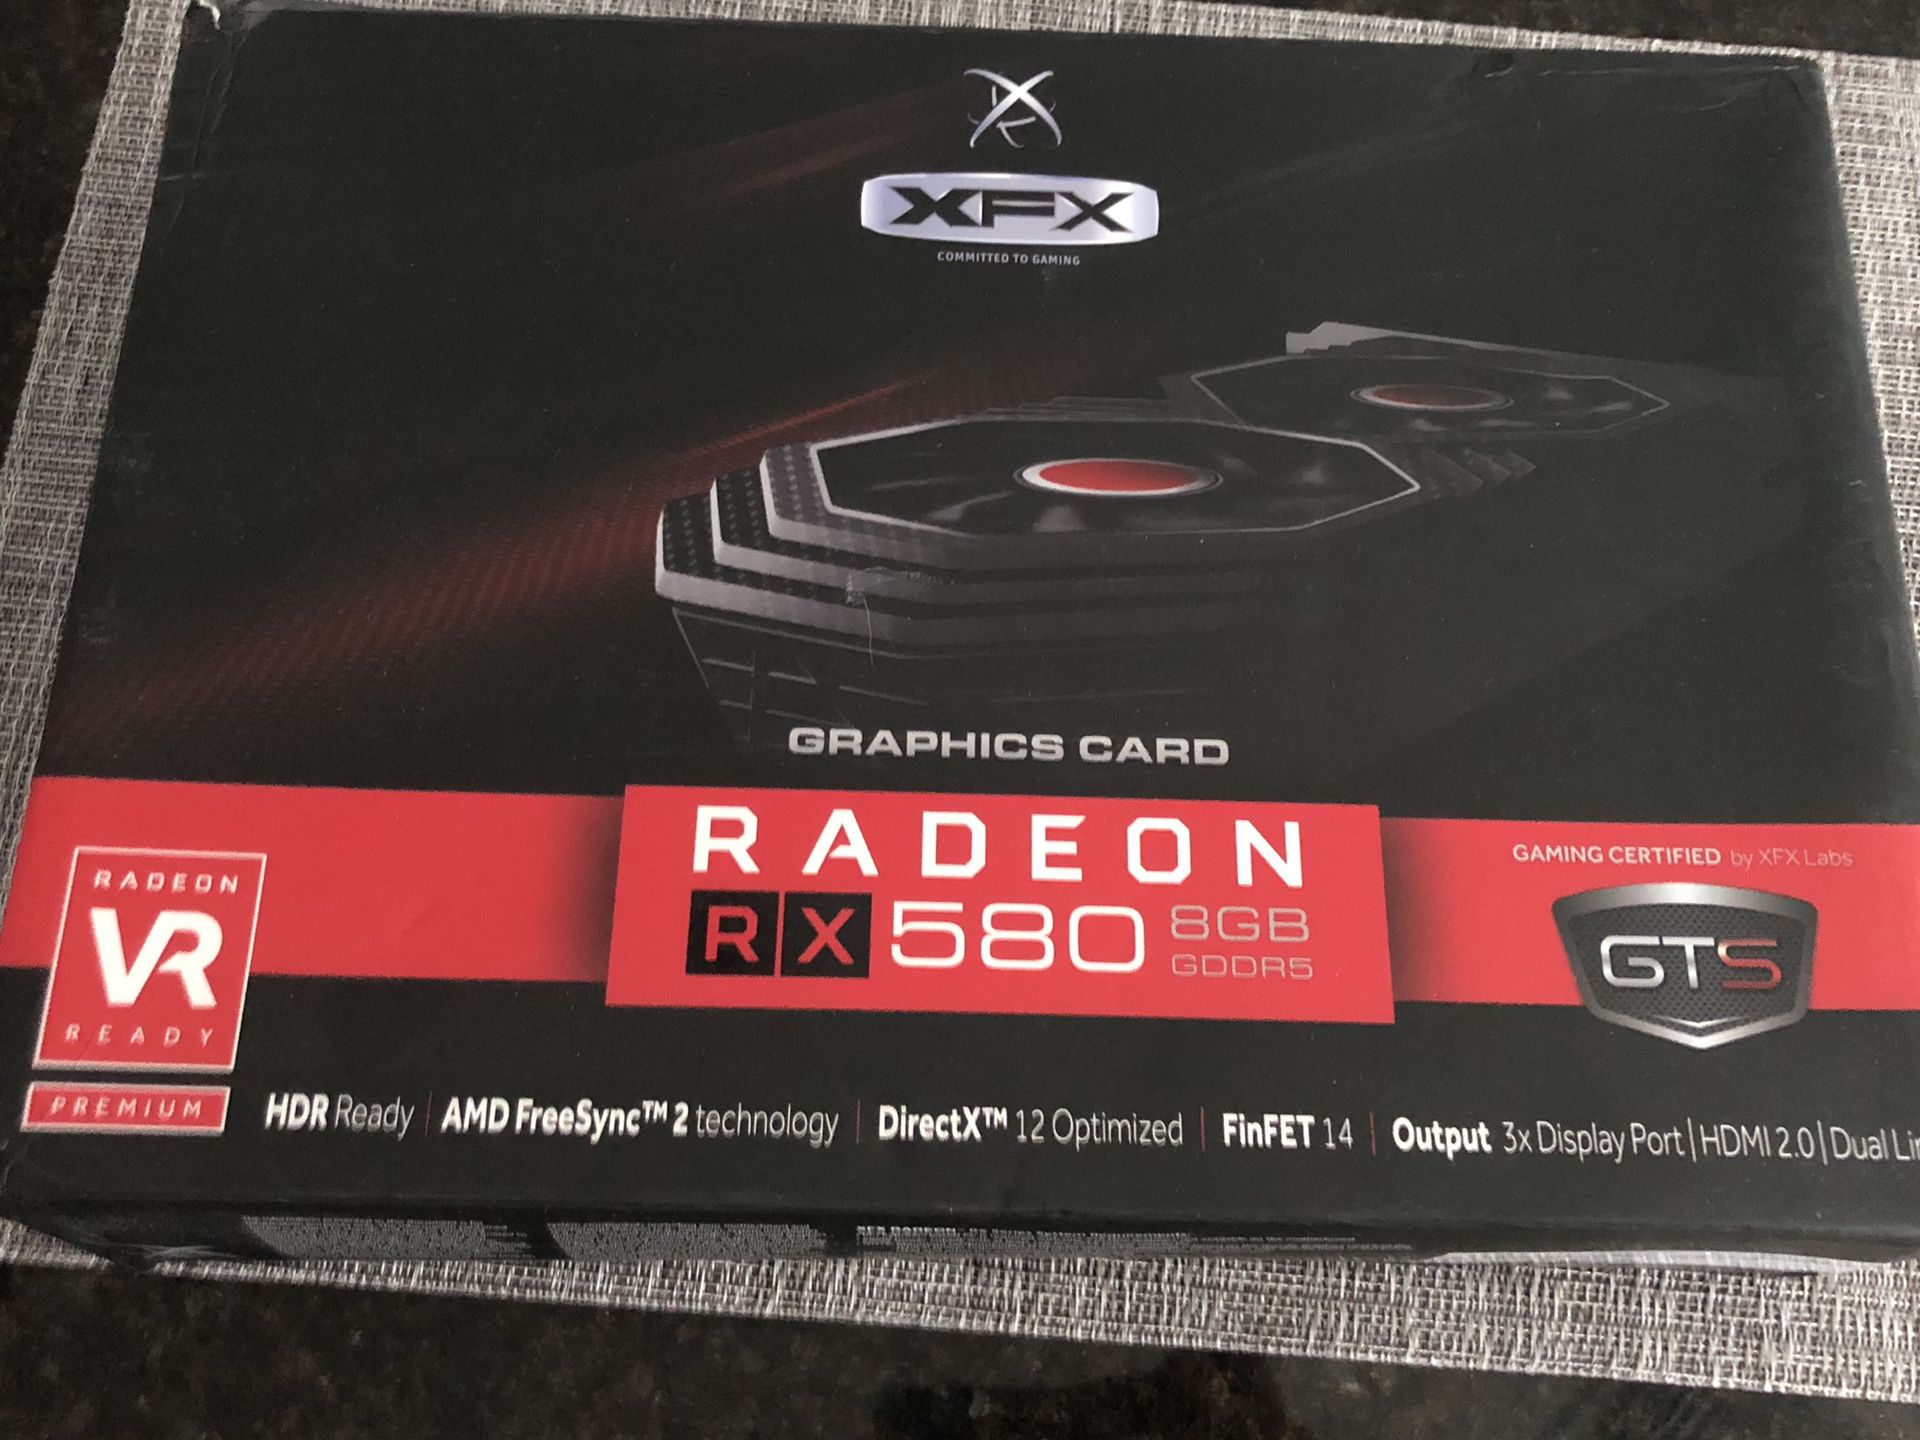 Radeon RX 580 GPU